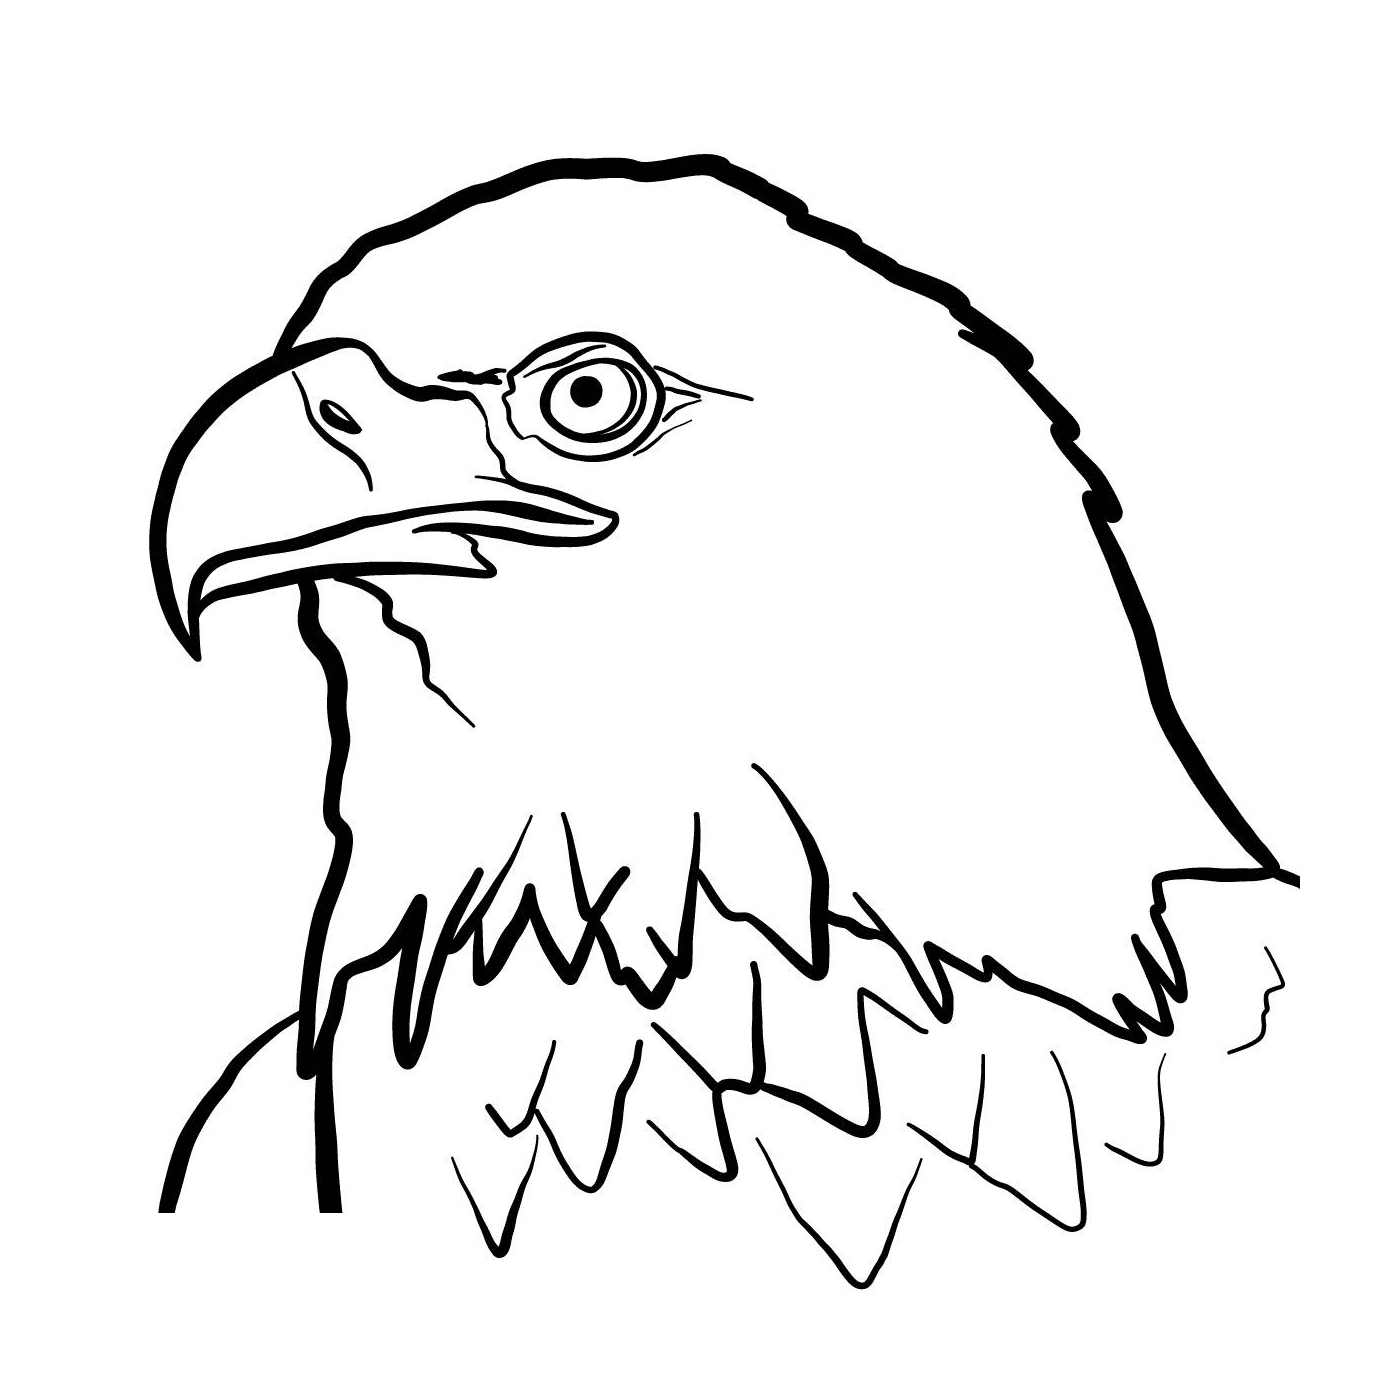  Royal eagle 